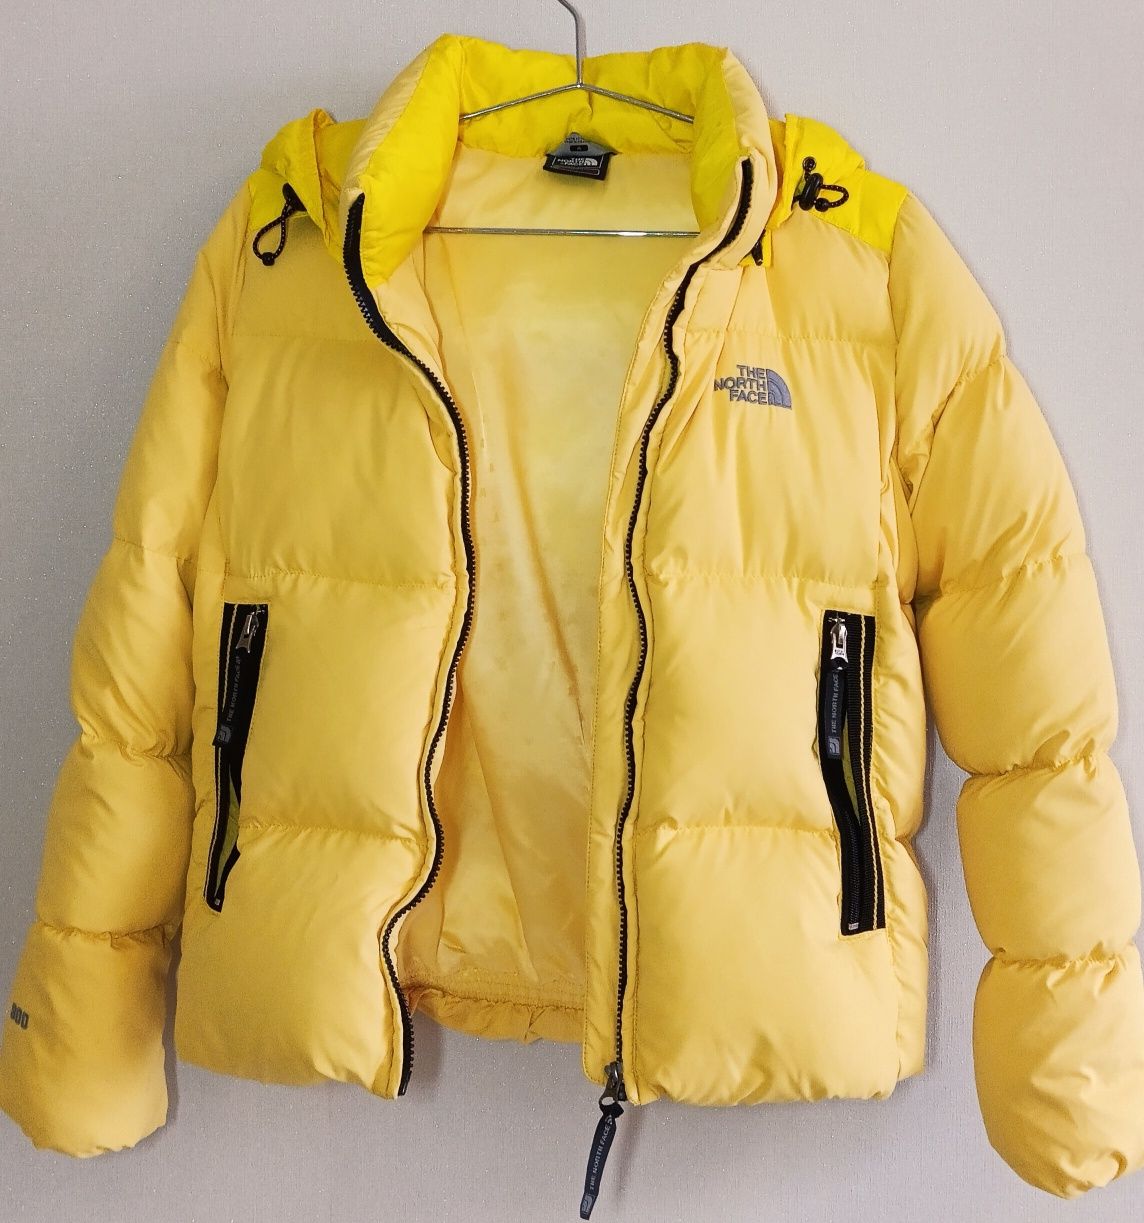 Пуховик, куртка зимняя женская The North Face 800, желтый 38/М/46